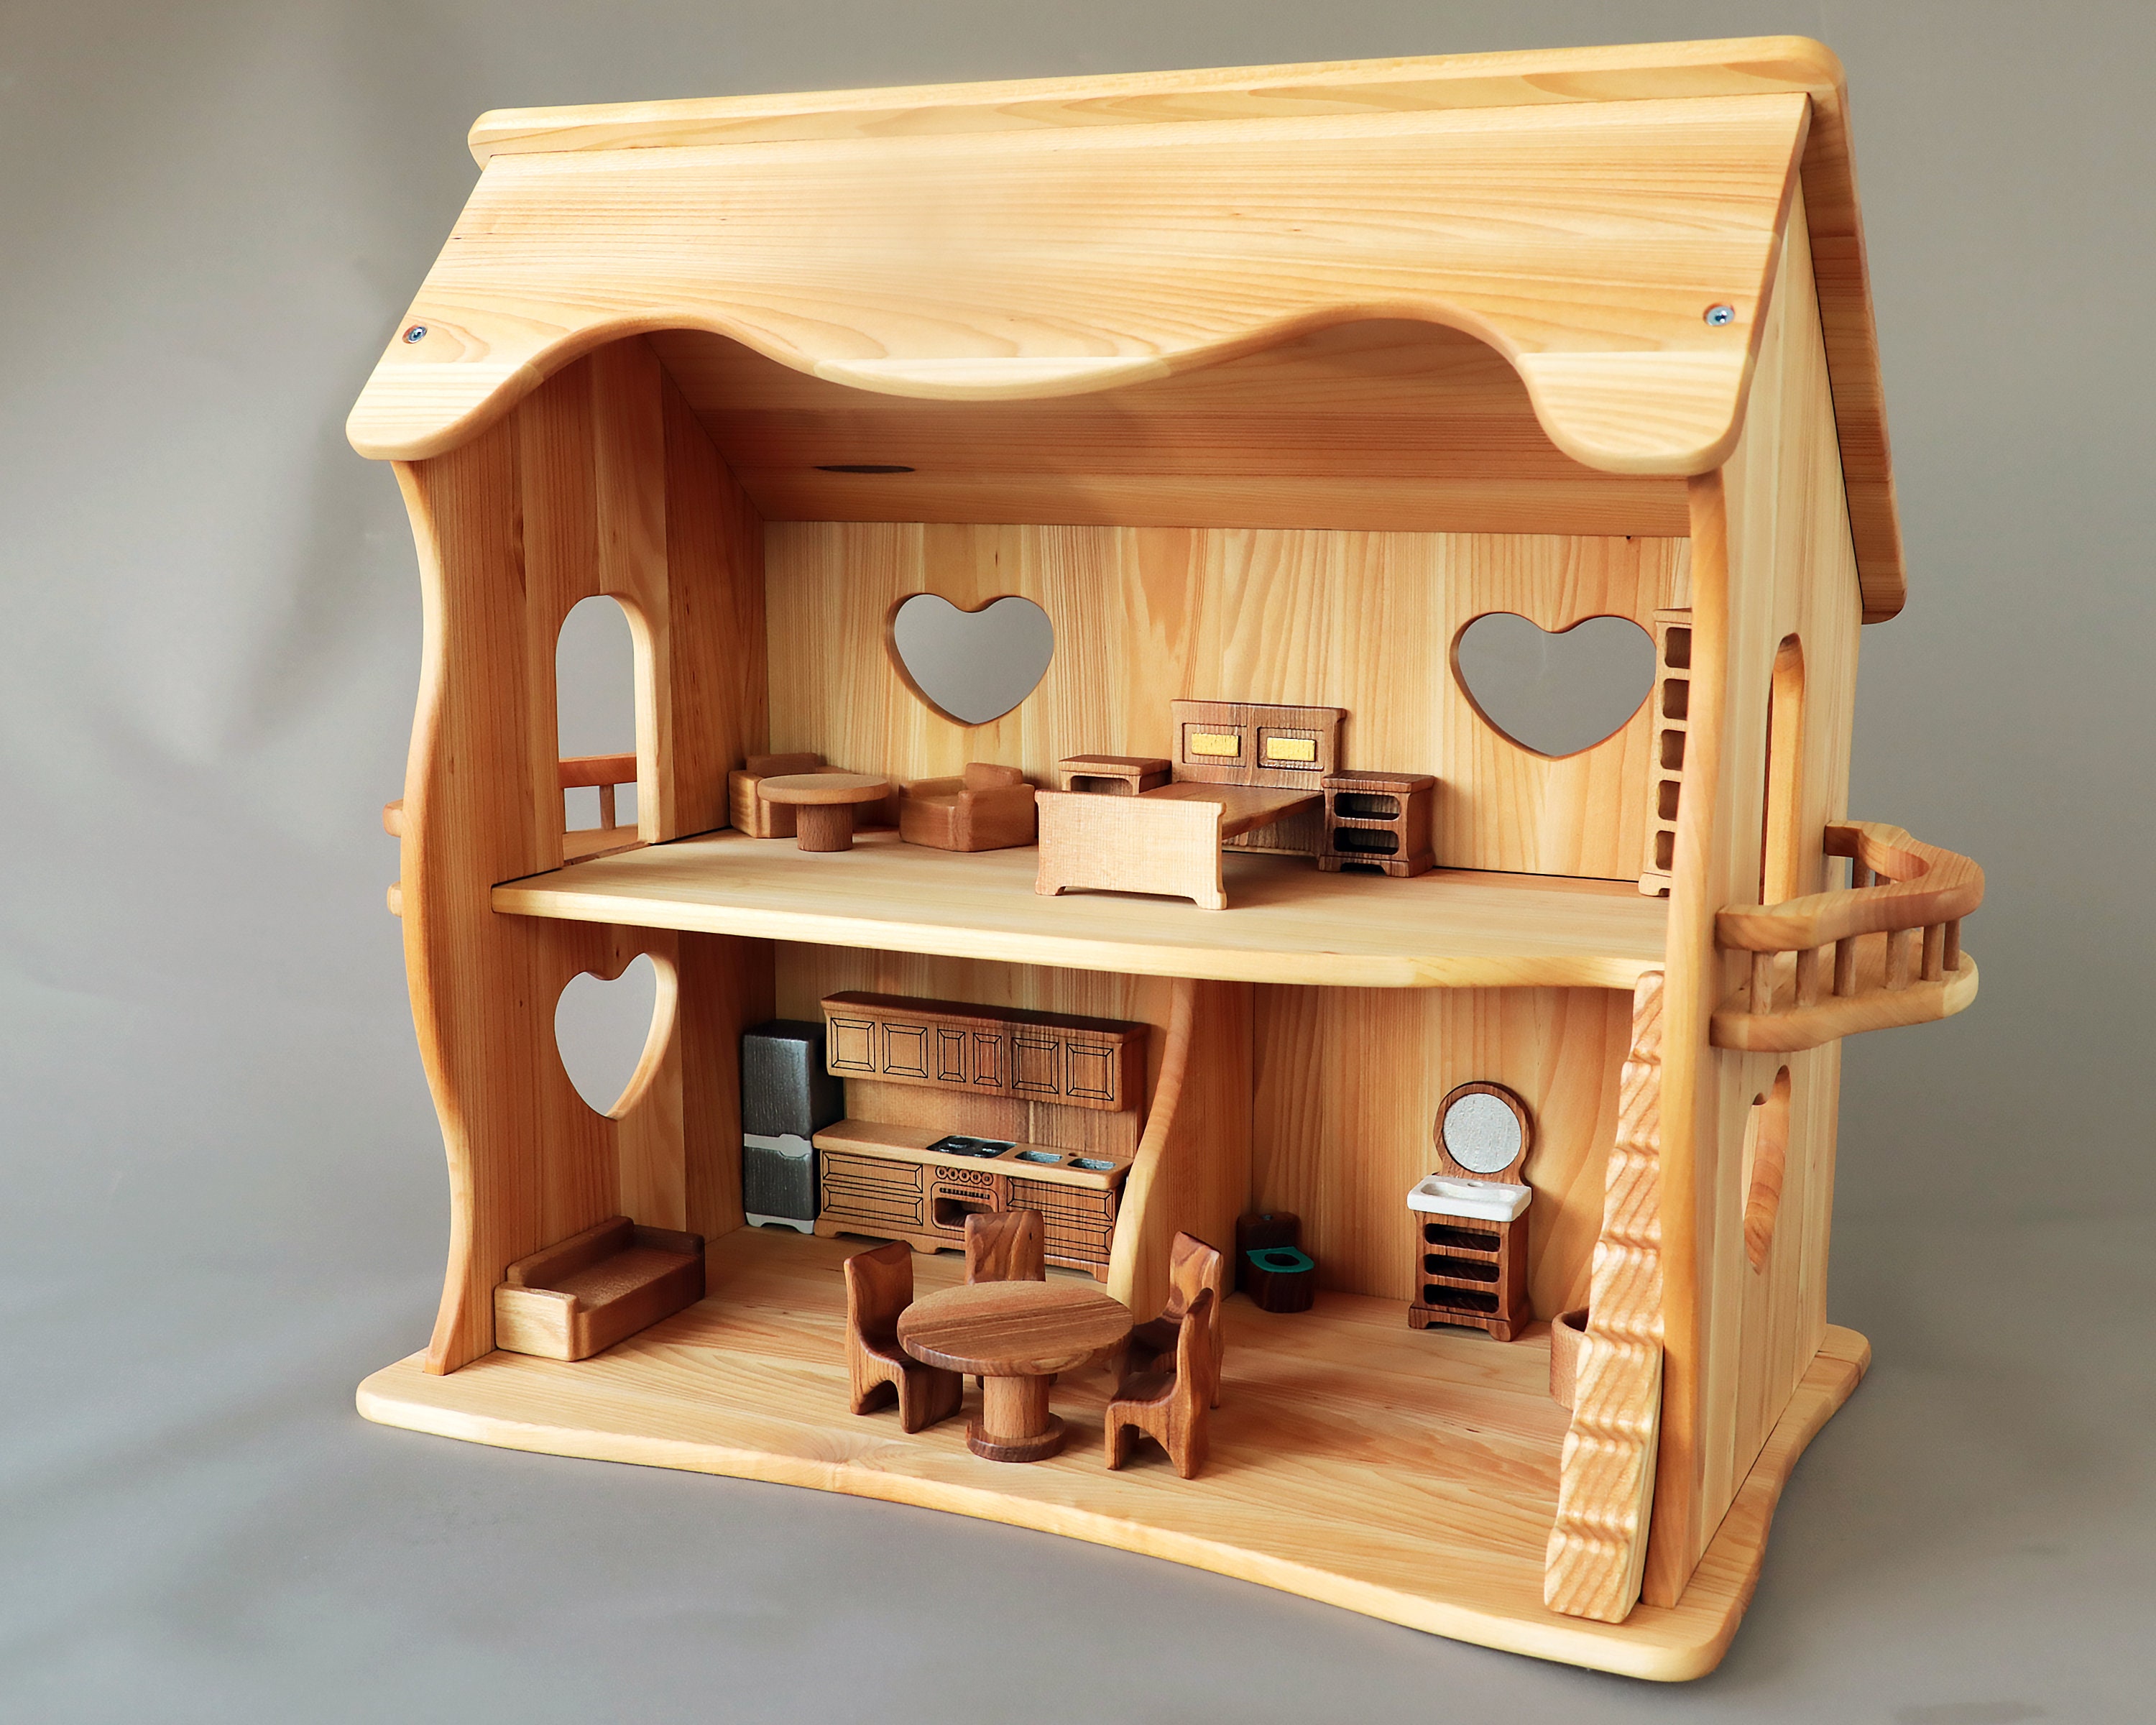 Puppenhaus aus Holz mit Mobiliar und vier Puppen ähnlich Waldorf Stil 